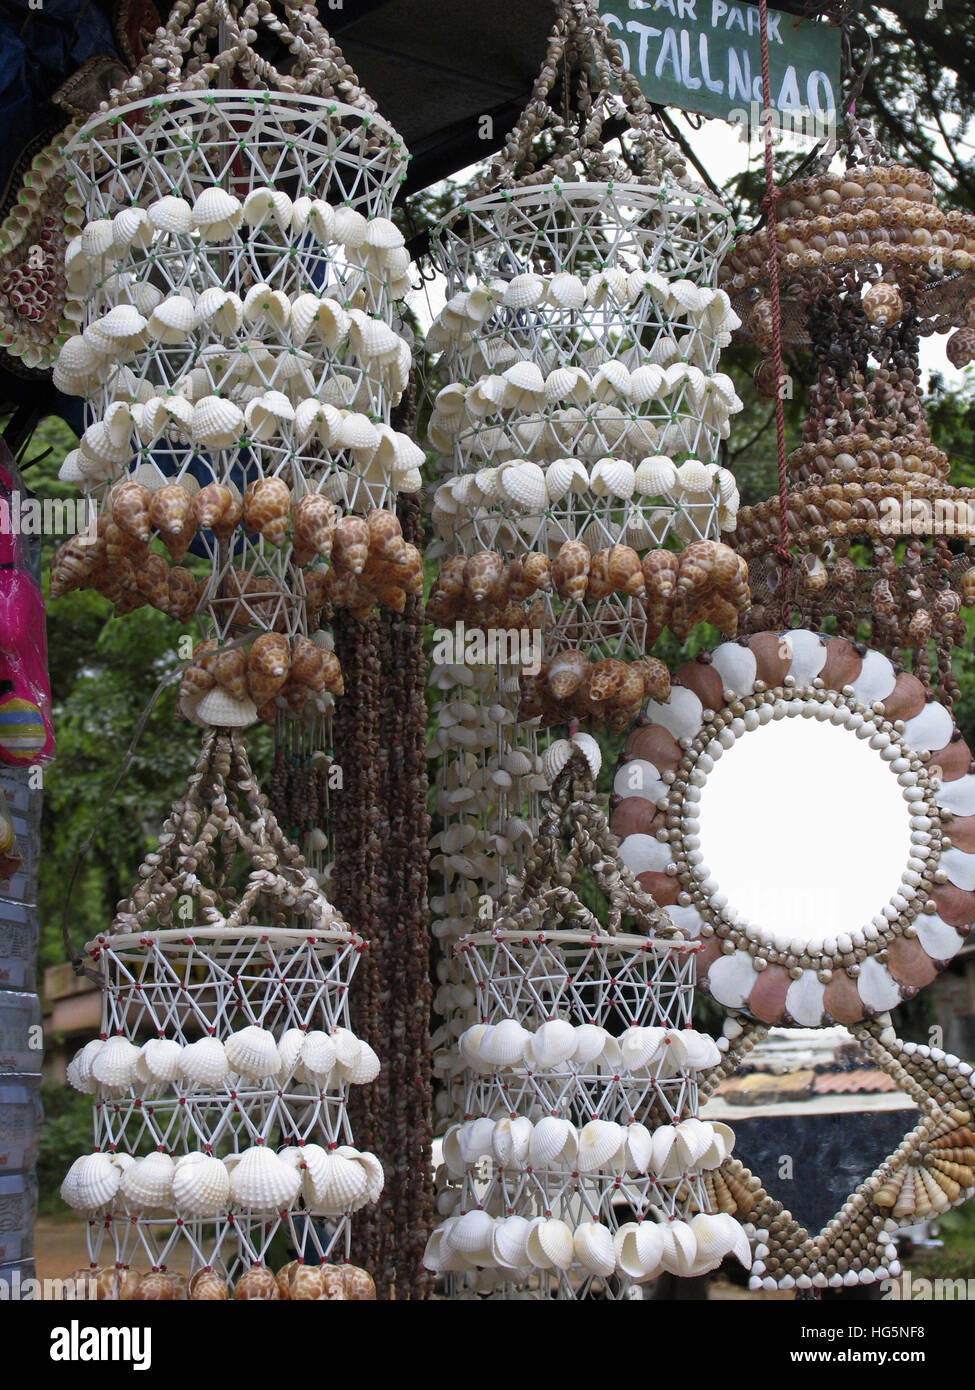 Show piece made from sea shells. Malampuzha, Palakkad, Kerala, India Stock Photo